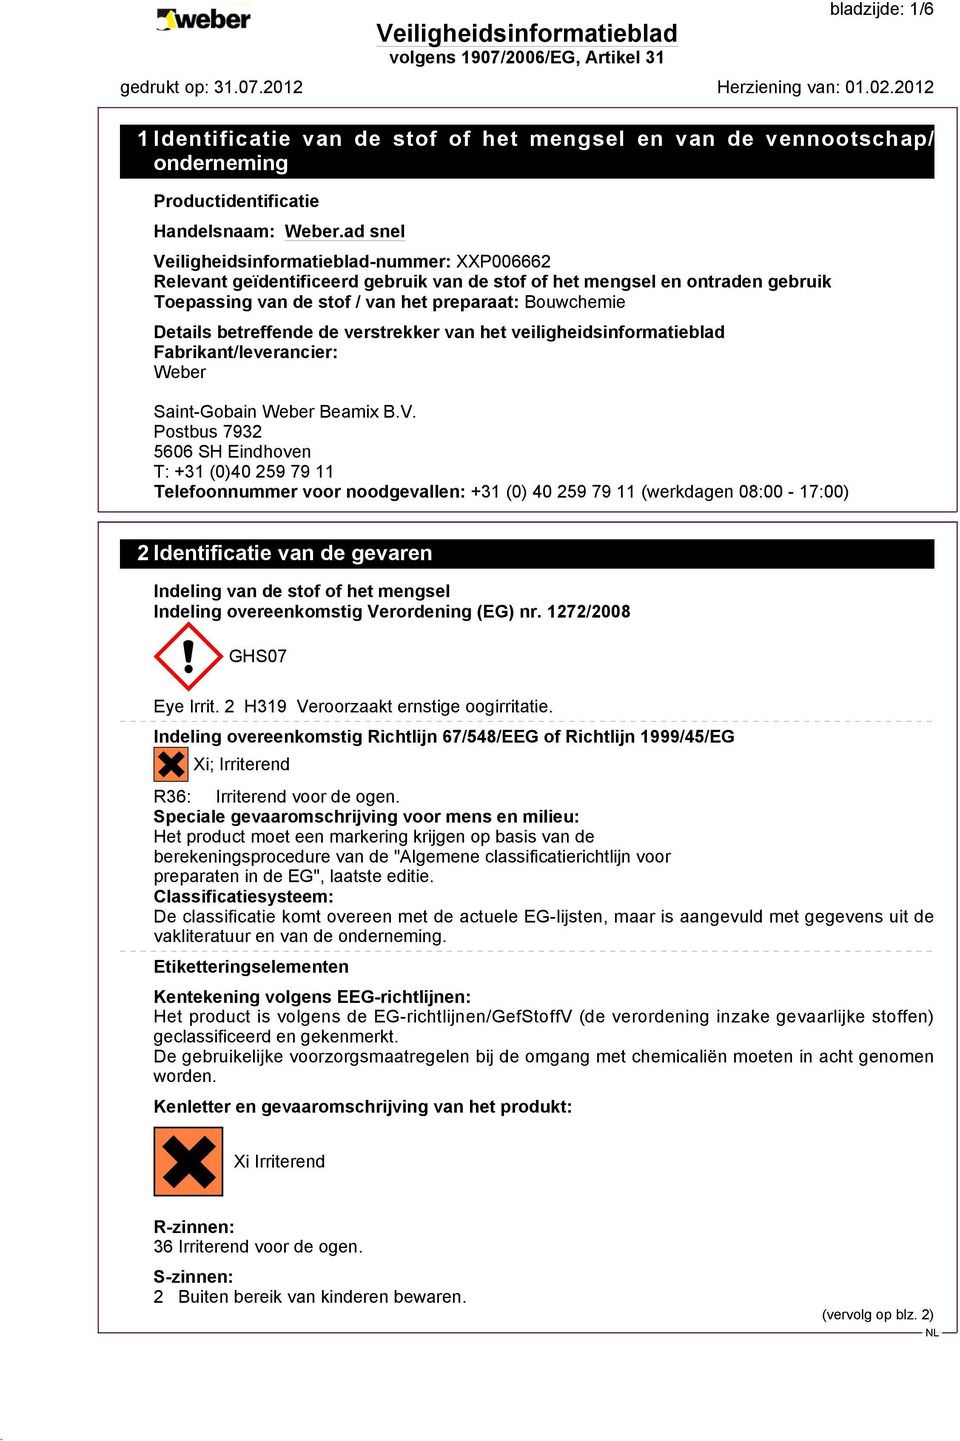 Postbus 7932 5606 SH Eindhoven T: +31 (0)40 259 79 11 Telefoonnummer voor noodgevallen: +31 (0) 40 259 79 11 (werkdagen 08:00-17:00) 2 Identificatie van de gevaren Indeling van de stof of het mengsel